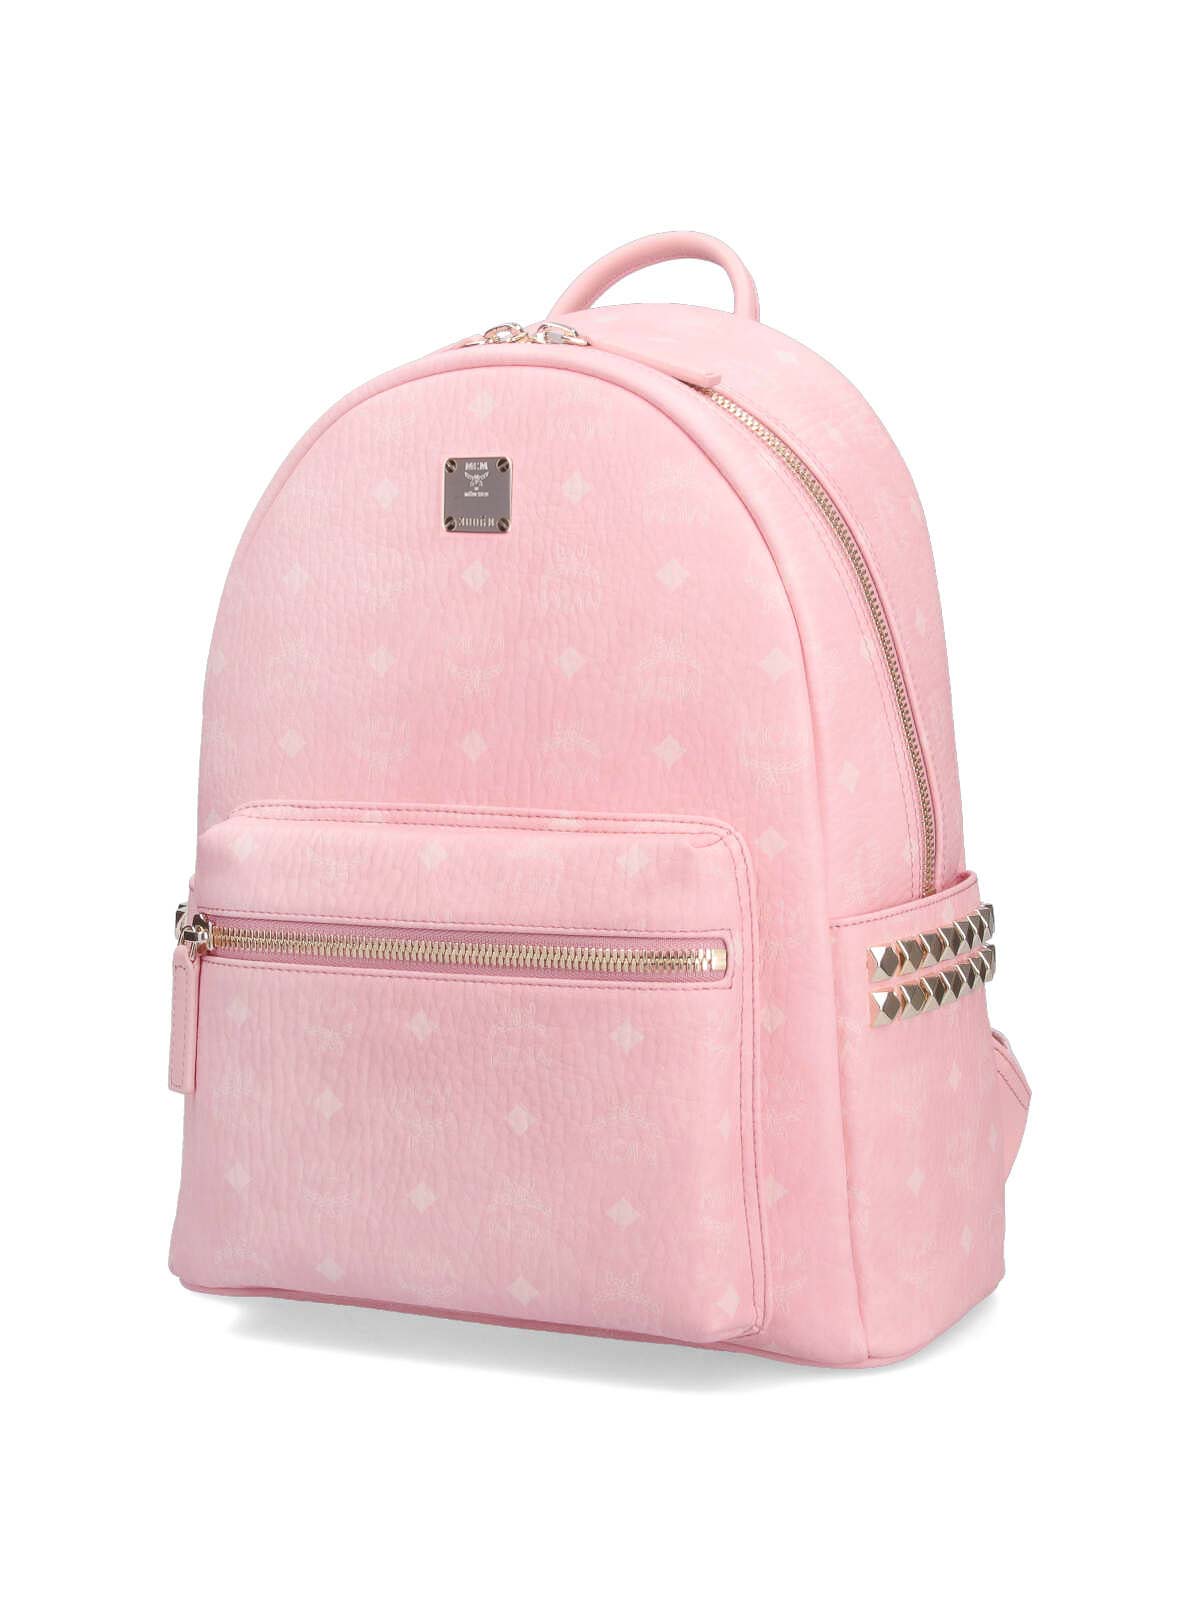 Mcm Stark Visetos Backpack - Blossom Pink